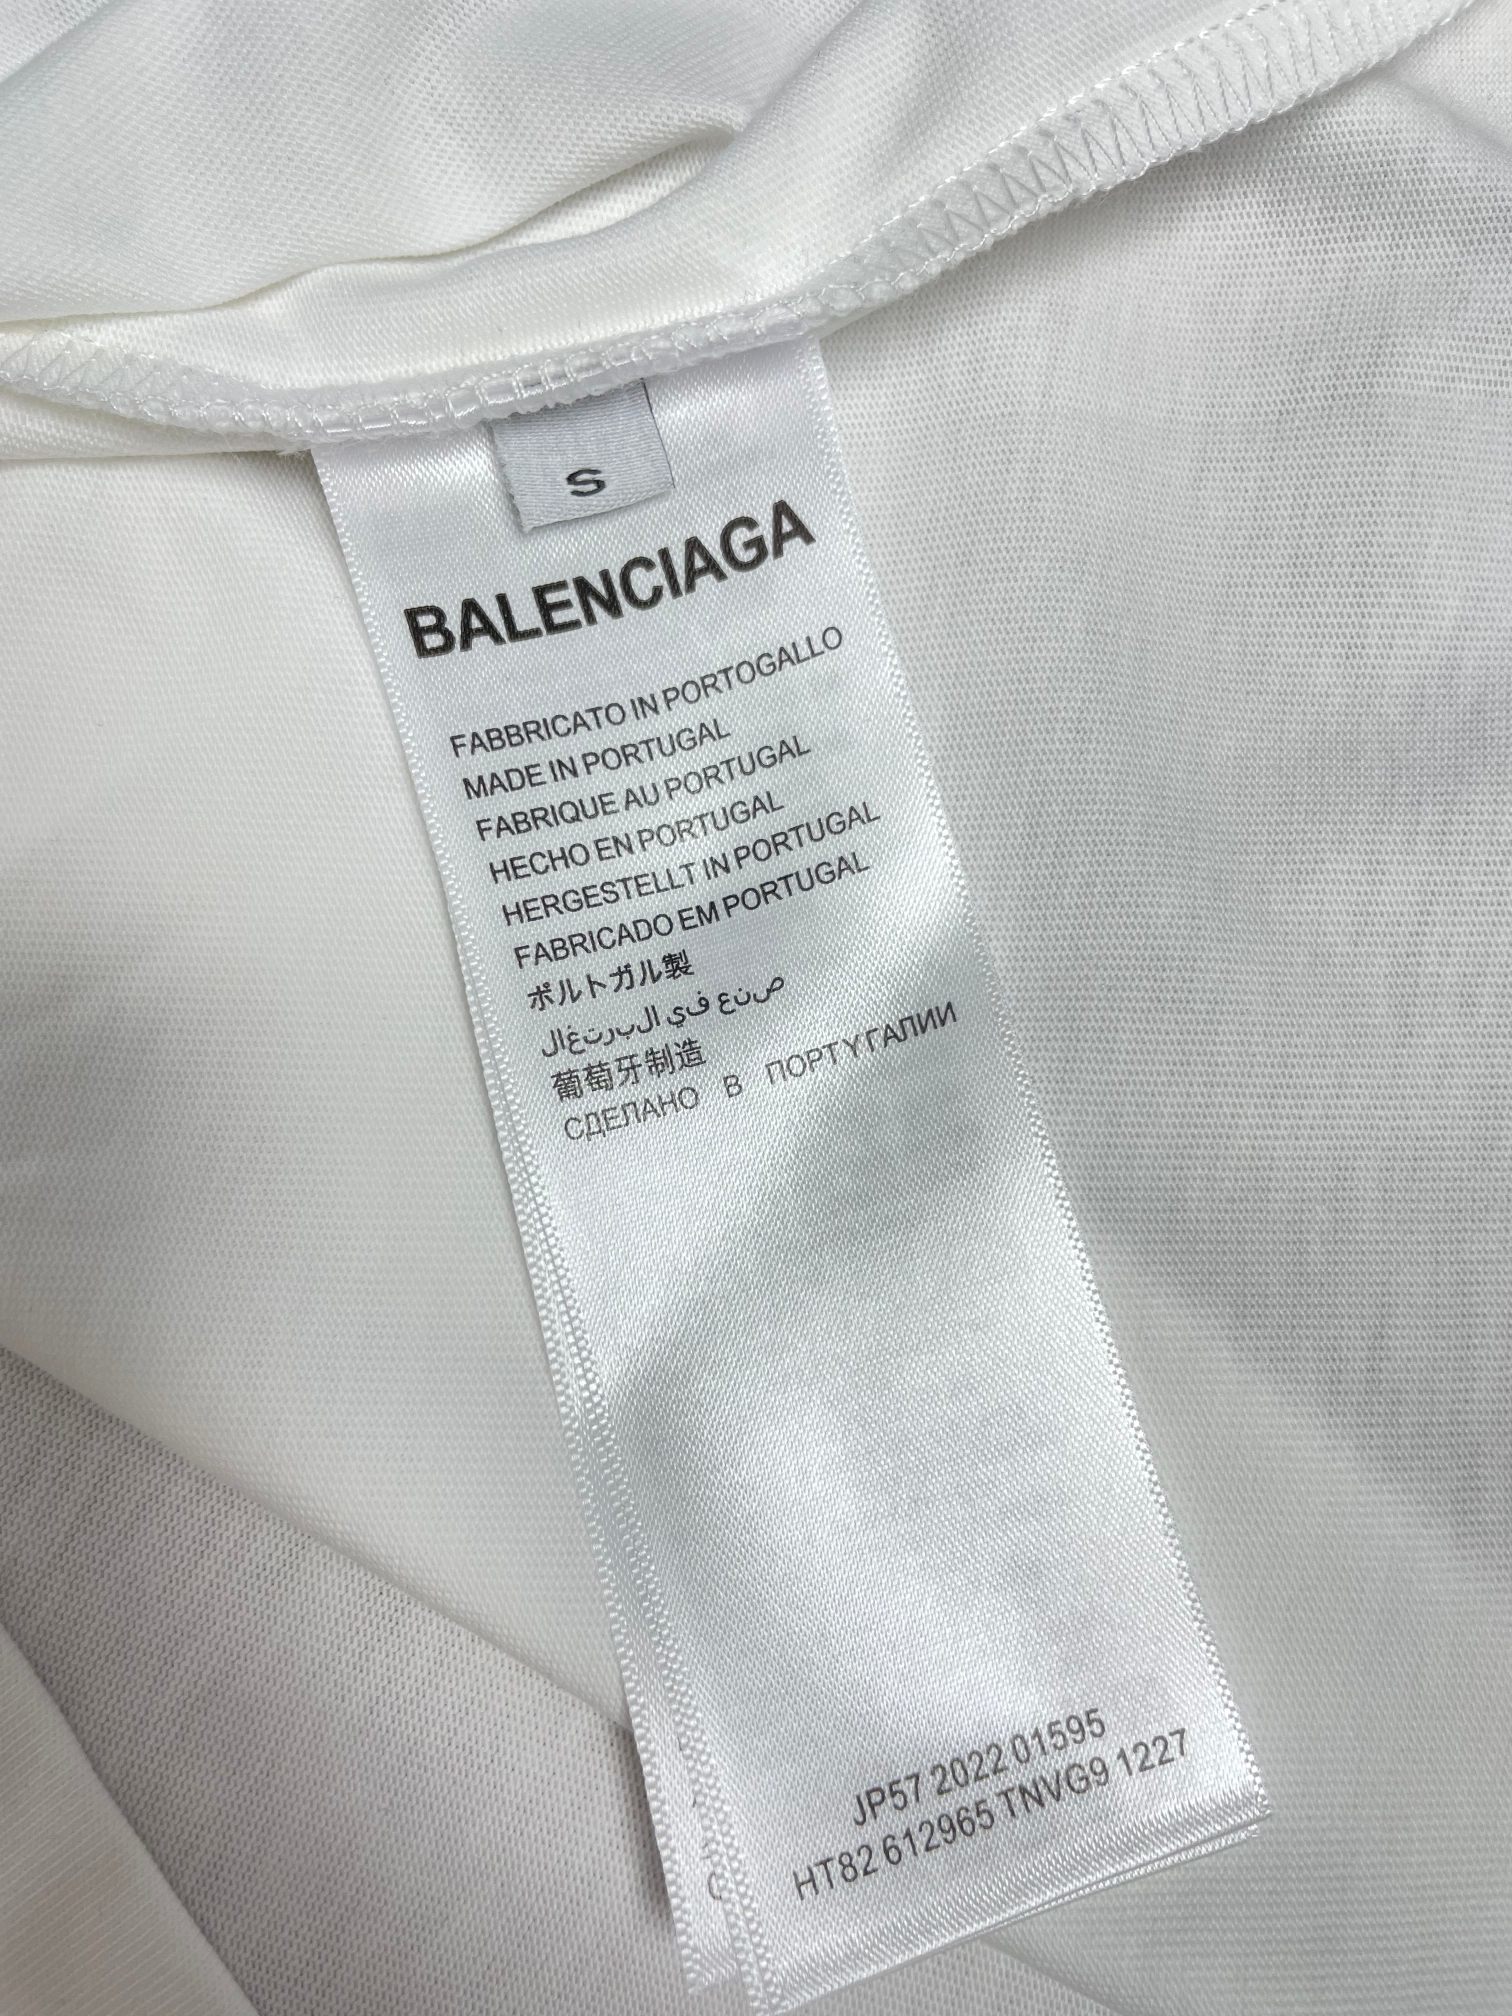 Balenciaga*巴黎世家耳机T恤*宽松版型客供订织23支双纱270克纯棉面料此面料要明显好于普通纱